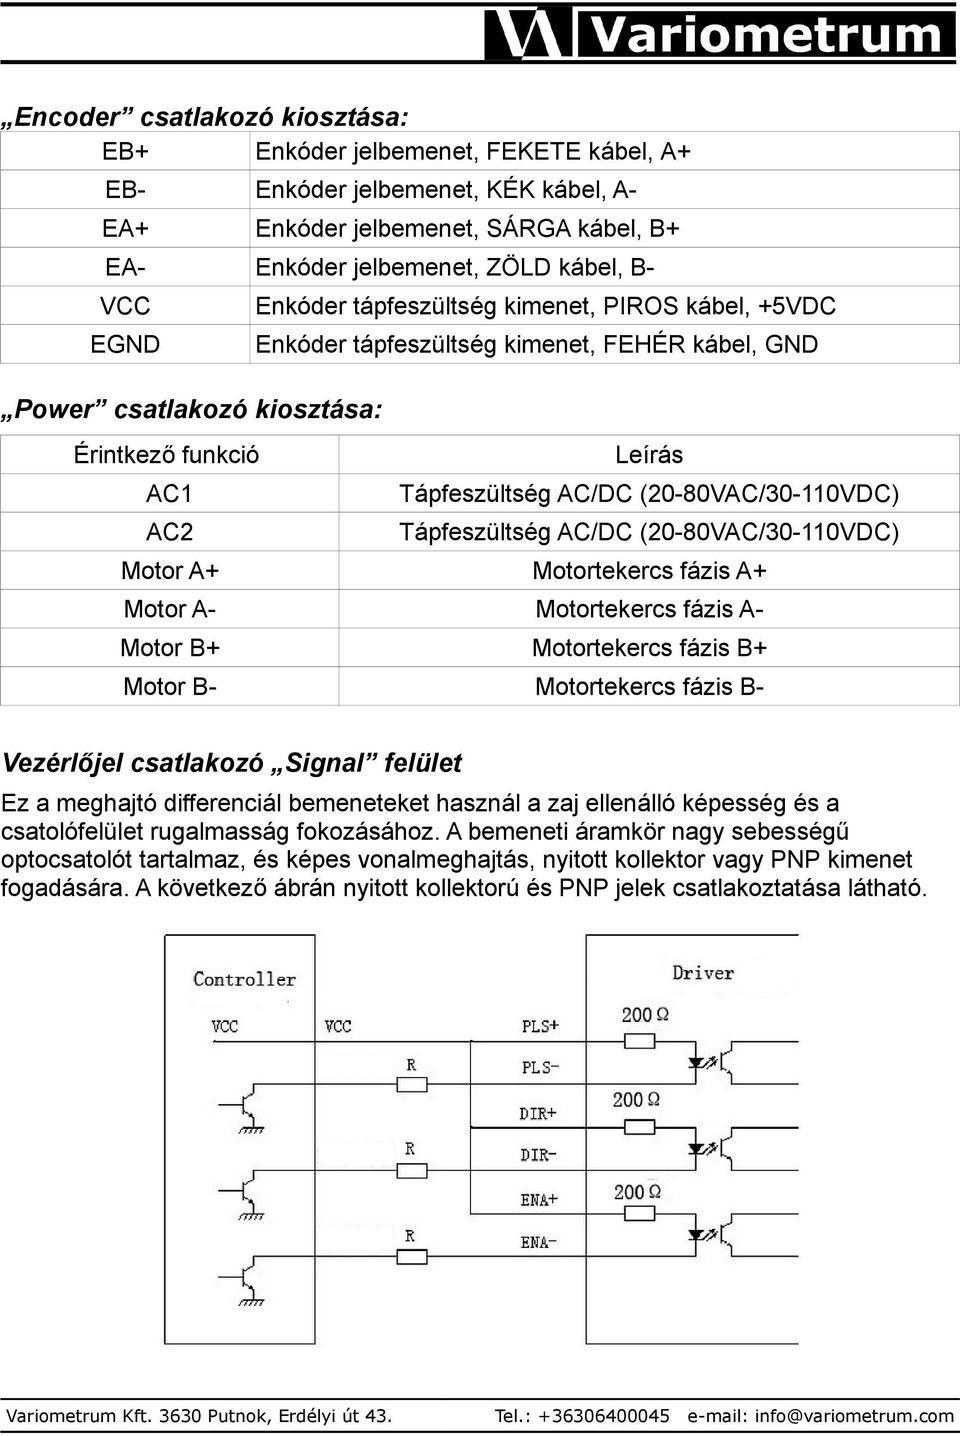 Tápfeszültség AC/DC (20-80VAC/30-110VDC) Motor A+ Motortekercs fázis A+ Motor A- Motortekercs fázis A- Motor B+ Motortekercs fázis B+ Motor B- Motortekercs fázis B- Vezérlőjel csatlakozó Signal